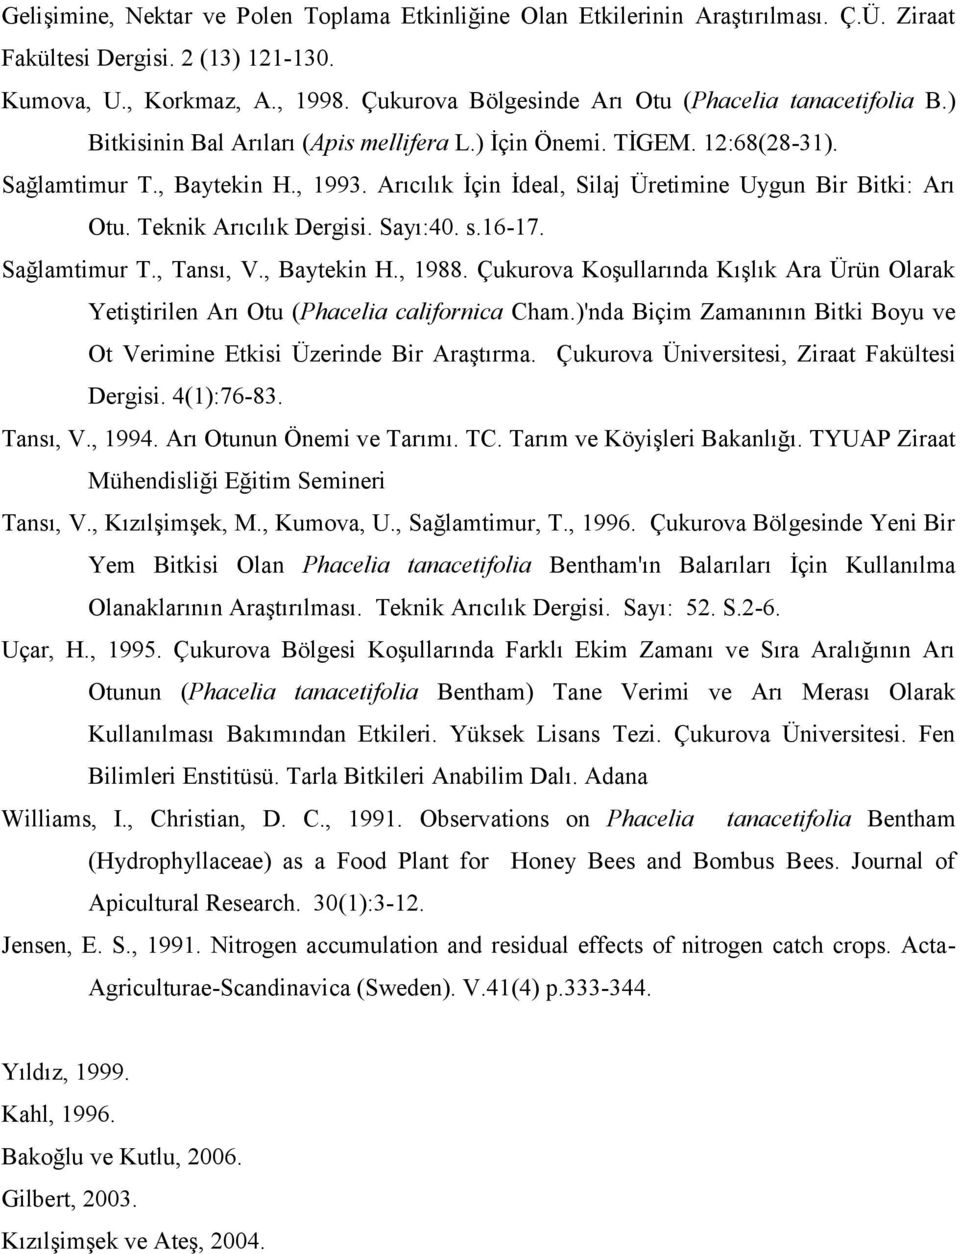 Arıcılık İçin İdeal, Silaj Üretimine Uygun Bir Bitki: Arı Otu. Teknik Arıcılık Dergisi. Sayı:40. s.16-17. Sağlamtimur T., Tansı, V., Baytekin H., 1988.